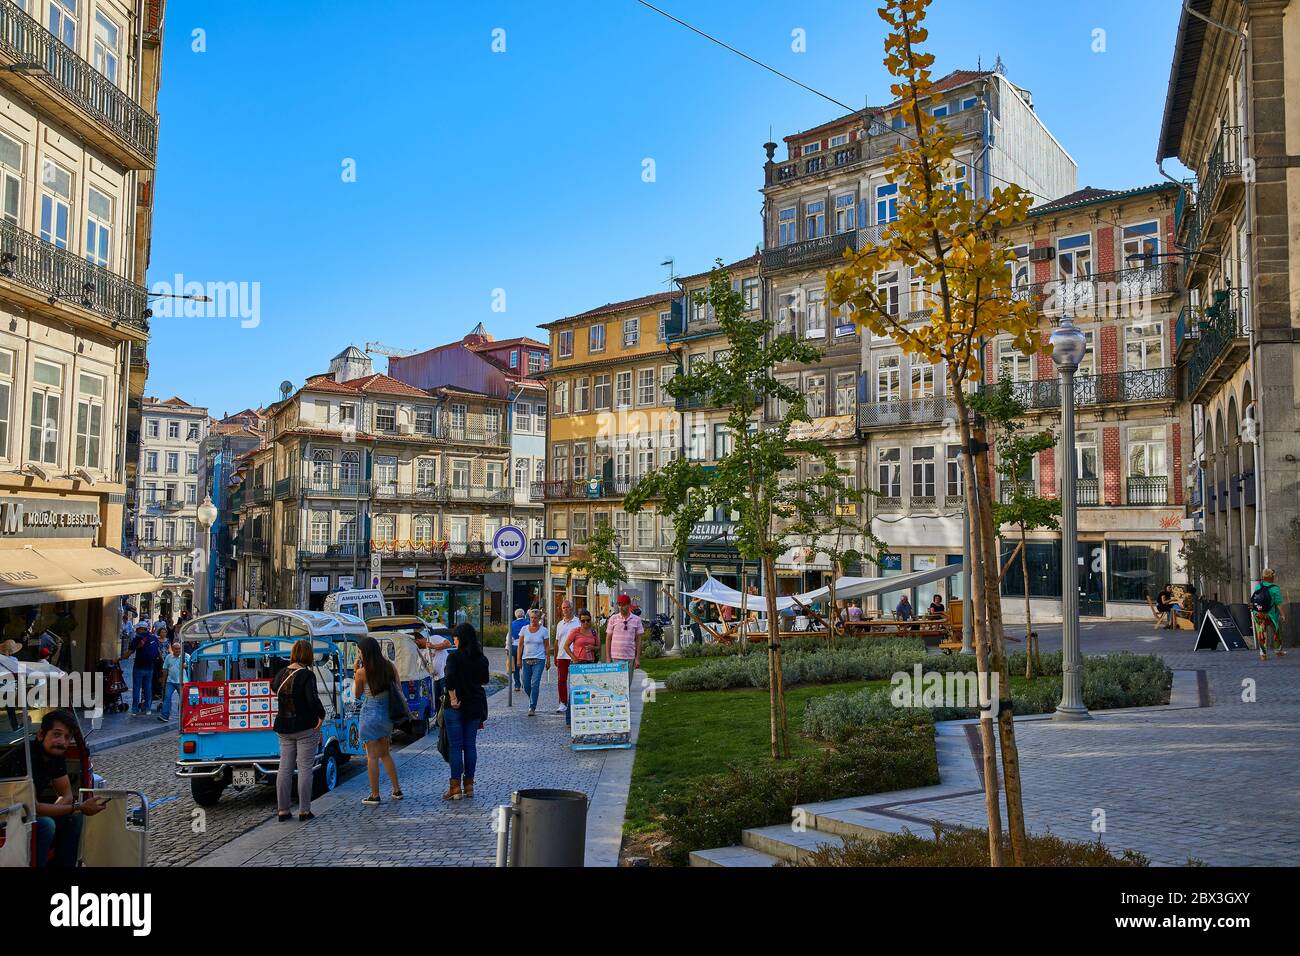 Scena di quartiere che mostra gli stili architettonici delle varie facciate e le ringhiere in ferro dei balconi di Porto Portogallo Foto Stock